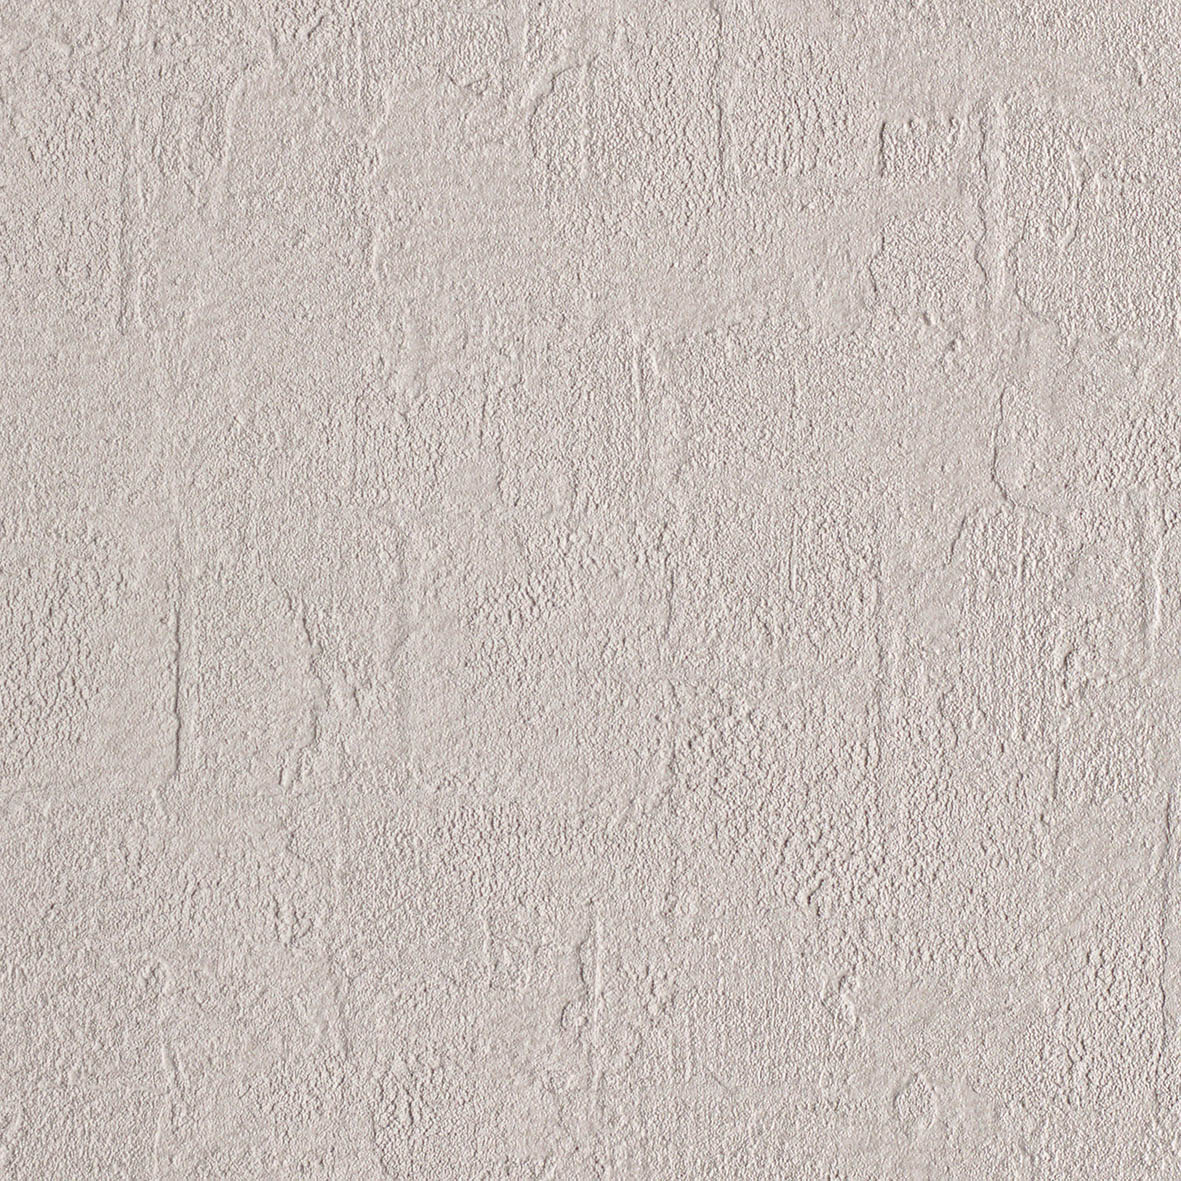 【のり付き】 LV-3043 リリカラ 壁紙/クロス 切売 リリカラ のり付き壁紙/クロス